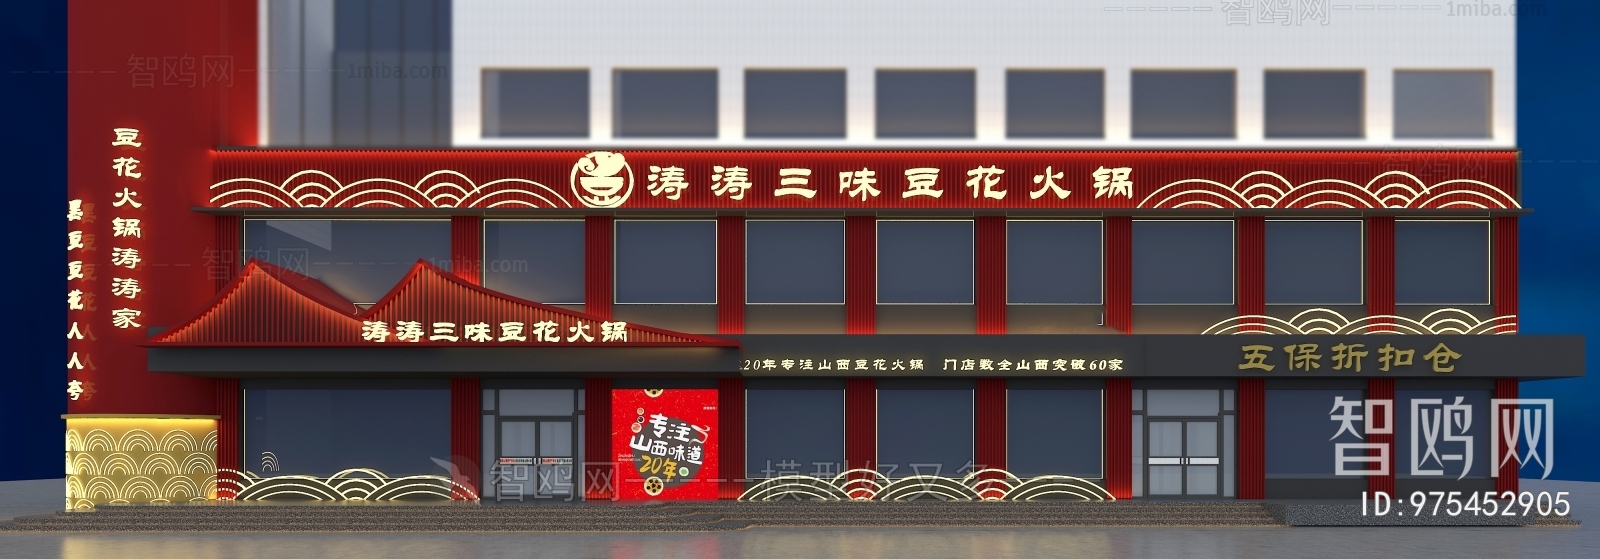 新中式火锅店门面门头